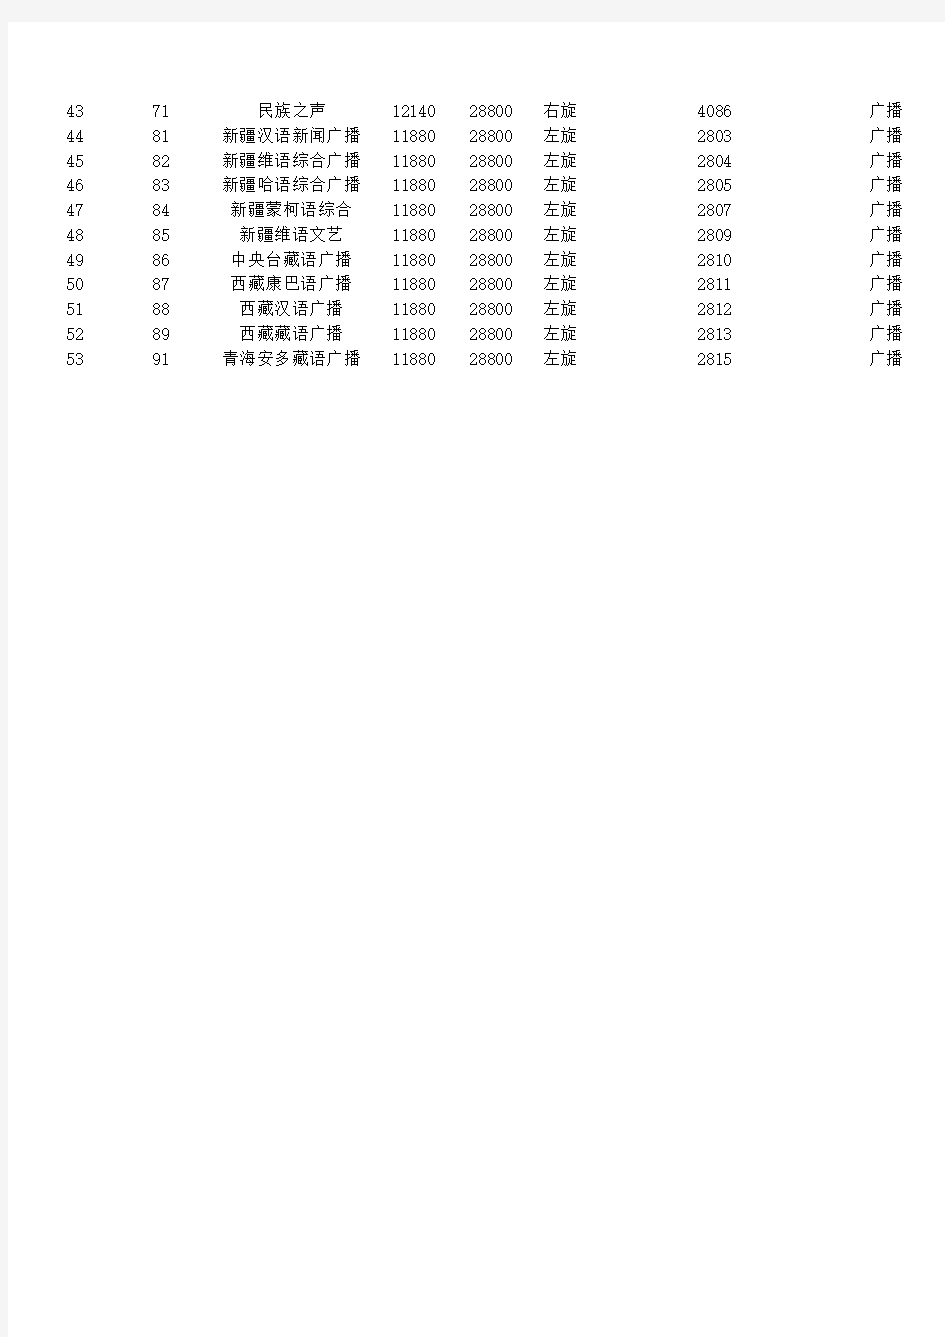 中星九号卫星(一代机及村村通)最新参数2015.年1月27日